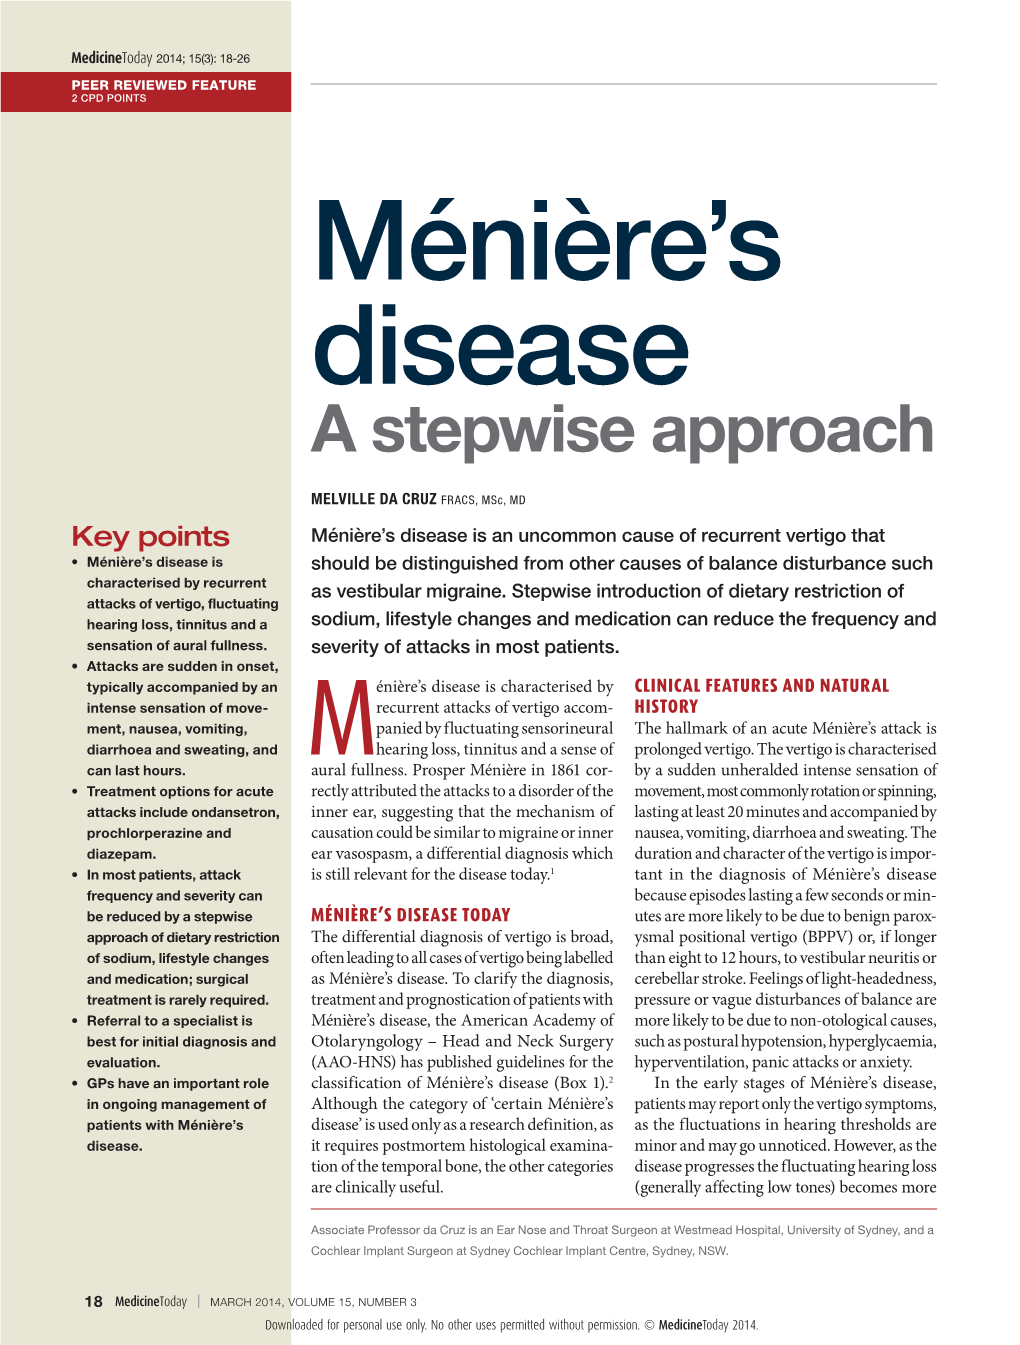 Meniere's Disease. a Stepwise Approach